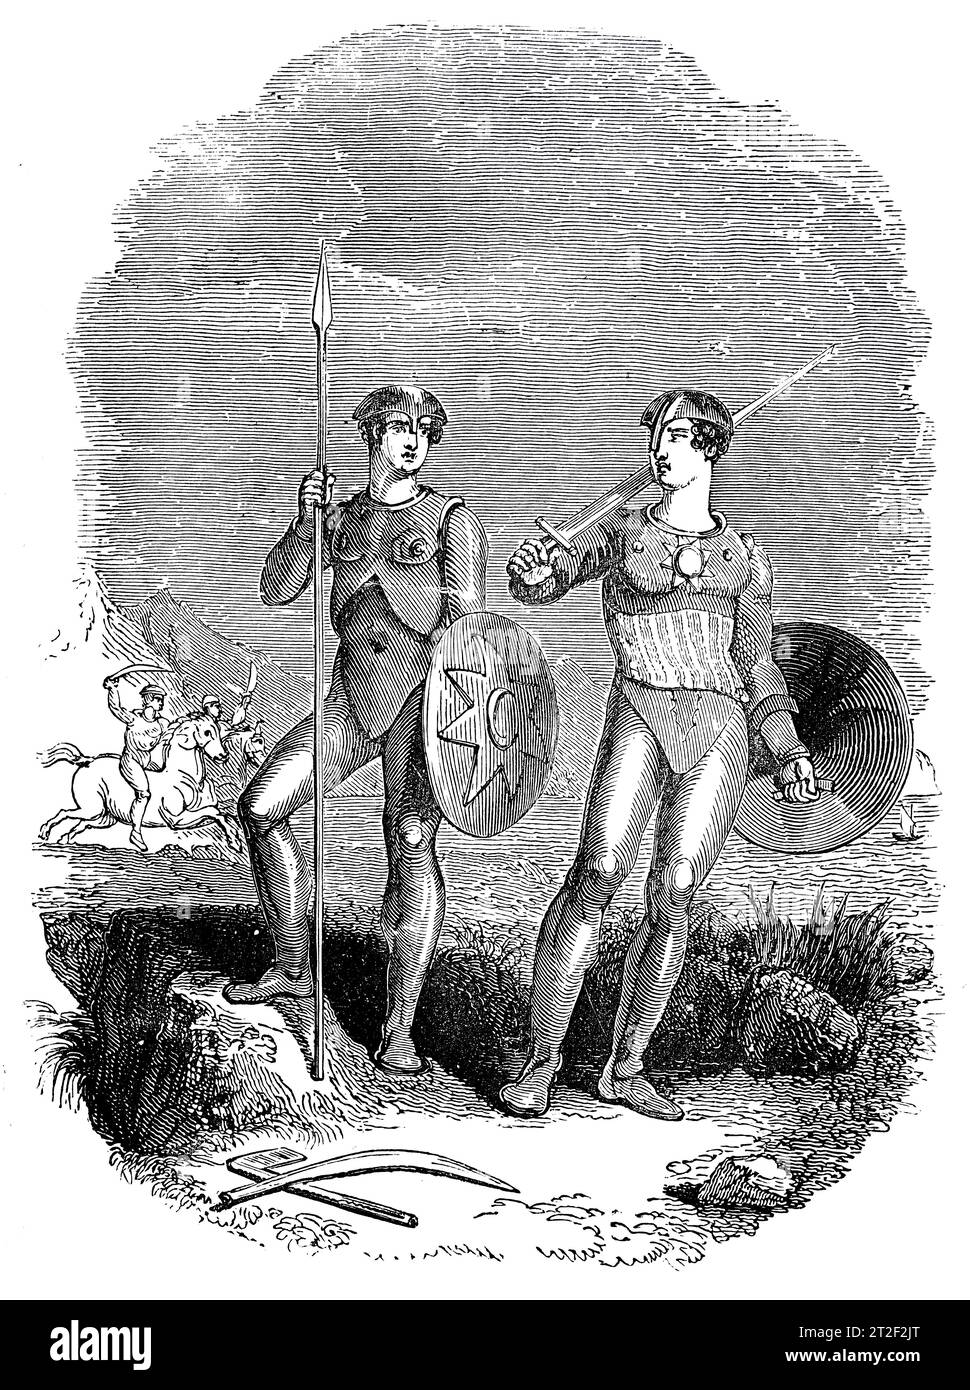 Armi e costumi delle tribù delle coste occidentali del Baltico. Black and White Illustration from the 'Old England' pubblicato da James Sangster nel 1860. Foto Stock